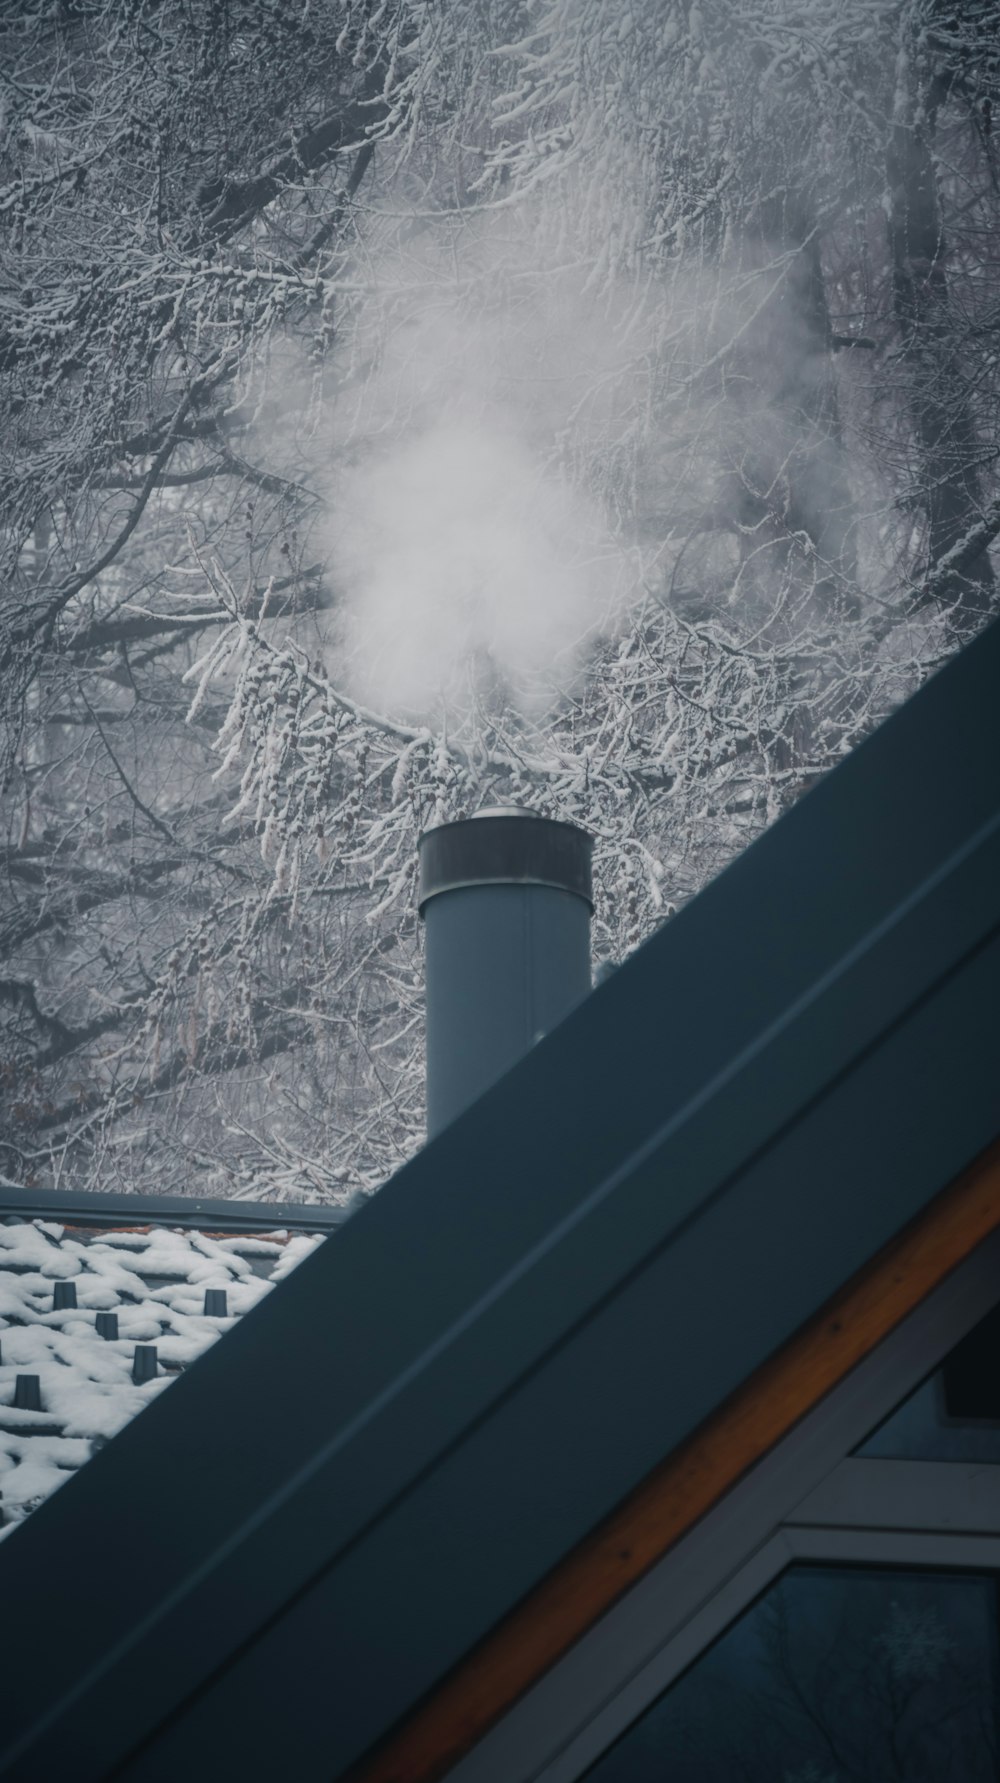 fumaça saindo de uma chaminé em um dia de neve